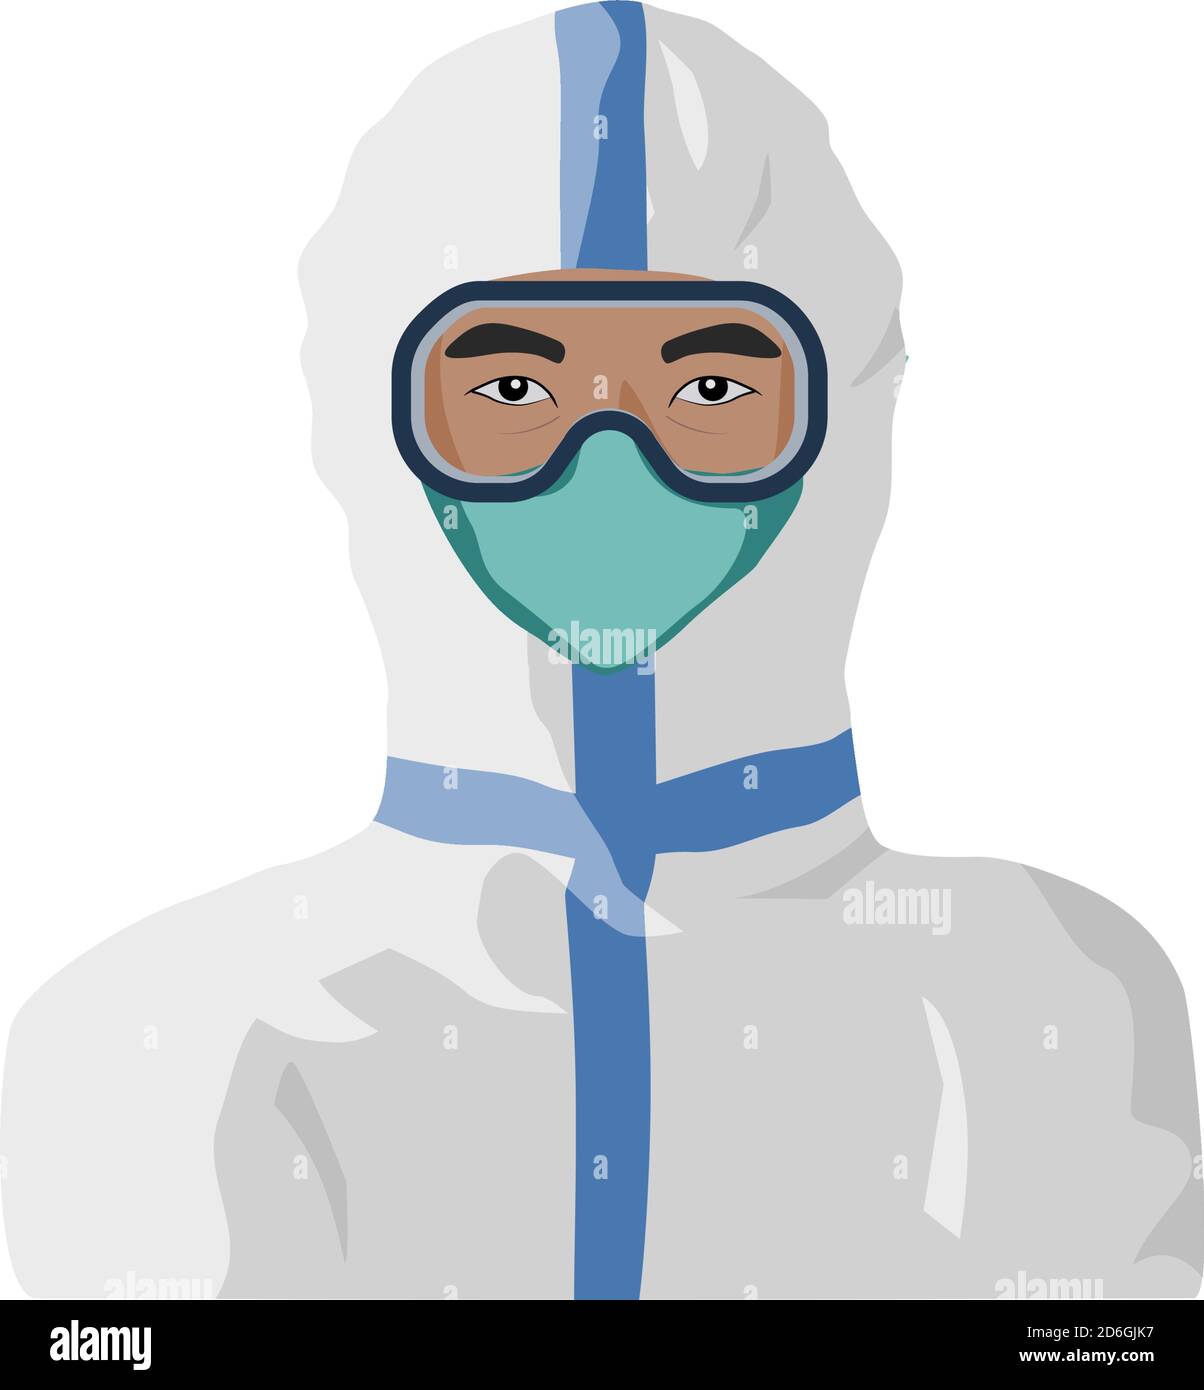 Medizinisches Personal, das persönliche Schutzausrüstung trägt. Asiatische Mann Porträt Illustration. Stock Vektor